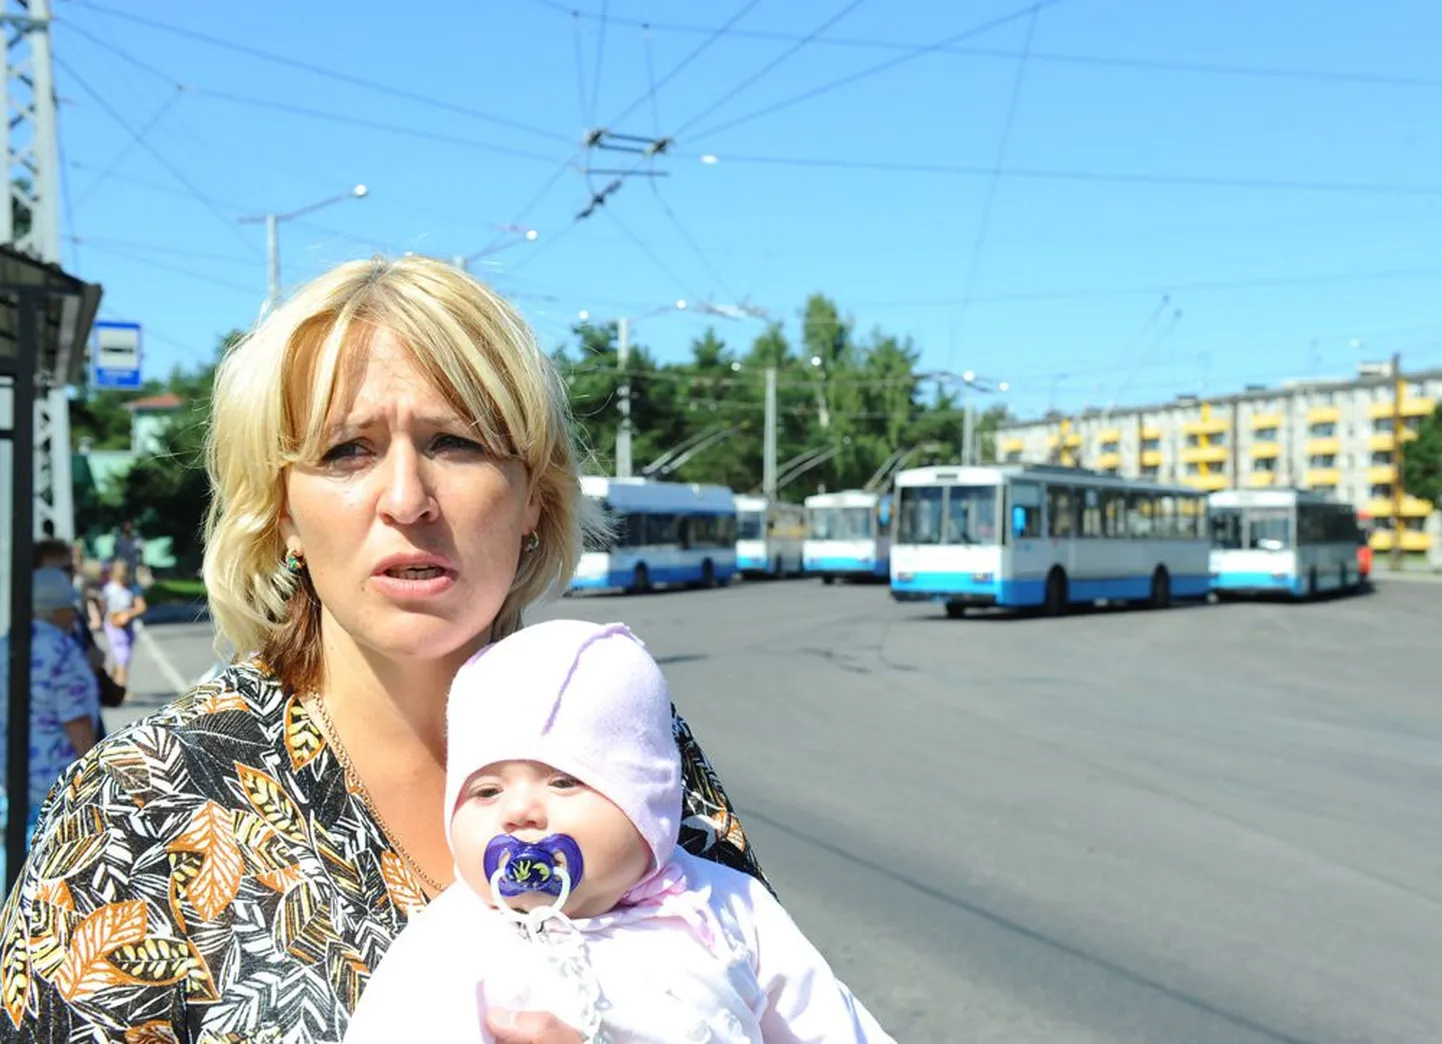 Светлана Куцур с ребенком на конечной остановке троллейбусов на улице Кескусе в Таллинне, где 11 мая на нее набросилась водитель троллейбуса.